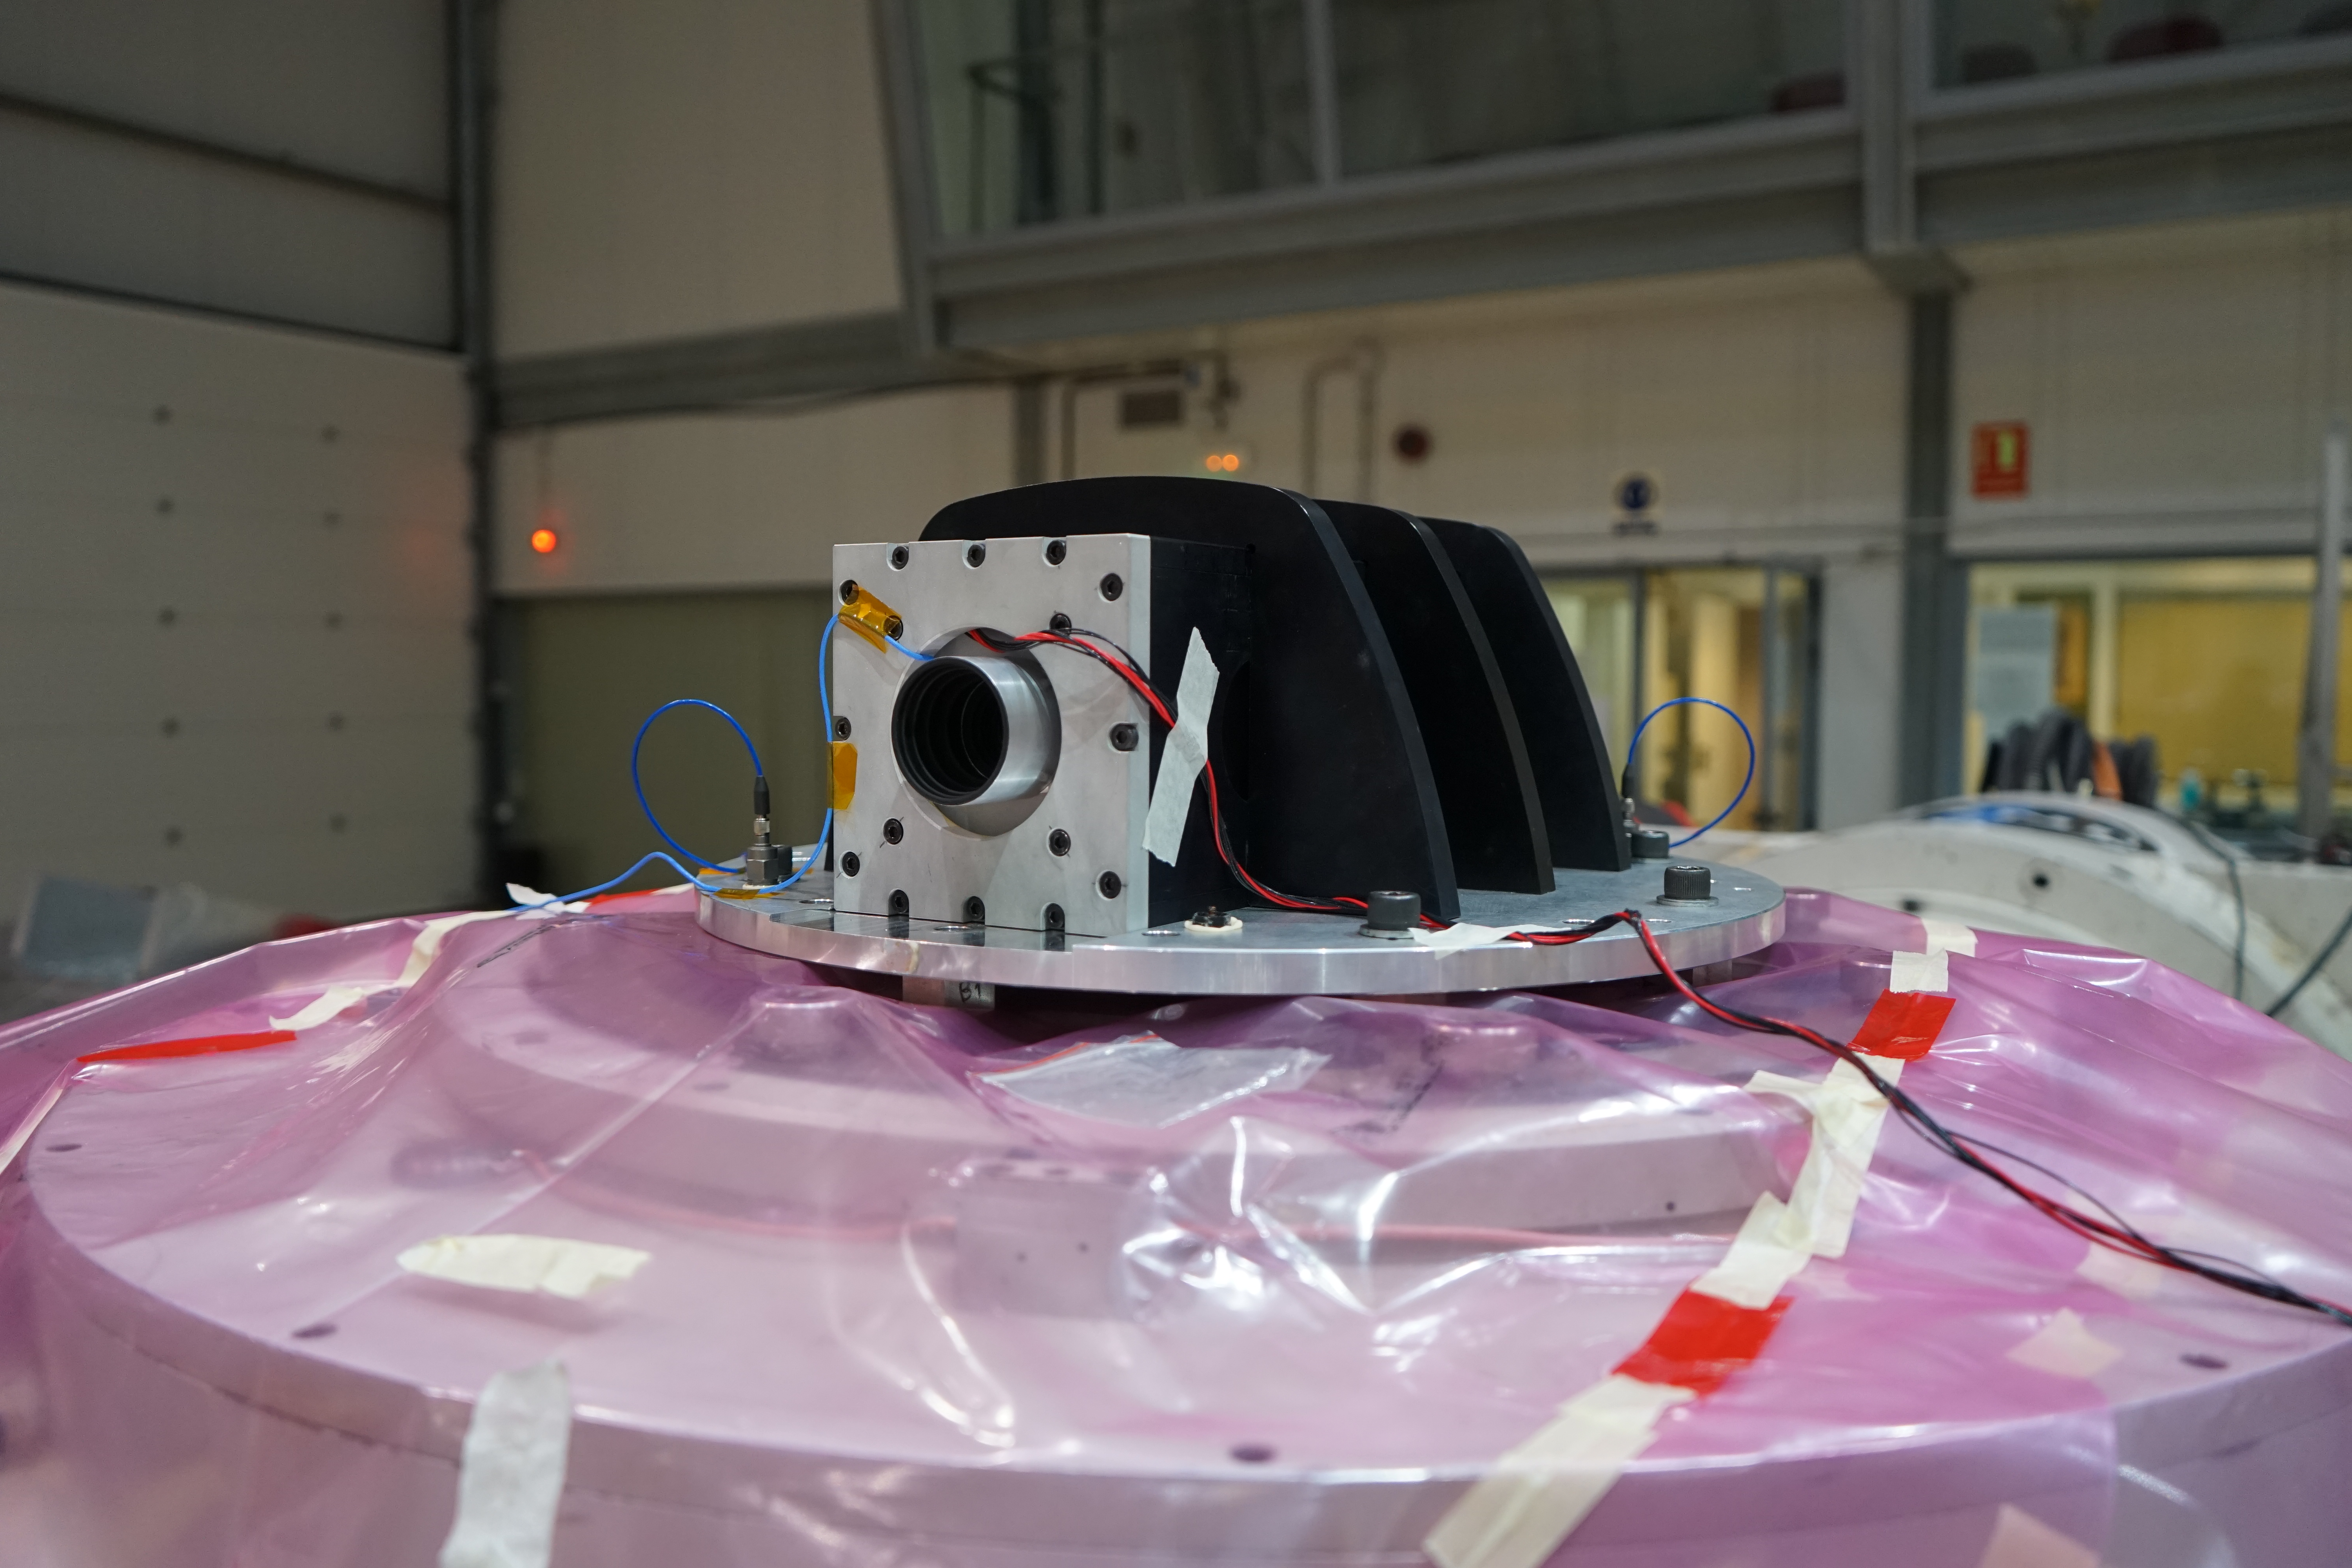 Imagen del instrumento DRAGO durante los ensayos de vibración en las instalaciones del Área de Ensayos del INTA (Instituto Nacional de Técnica Aeroespacial). Crédito: Samuel Sordo (IAC).